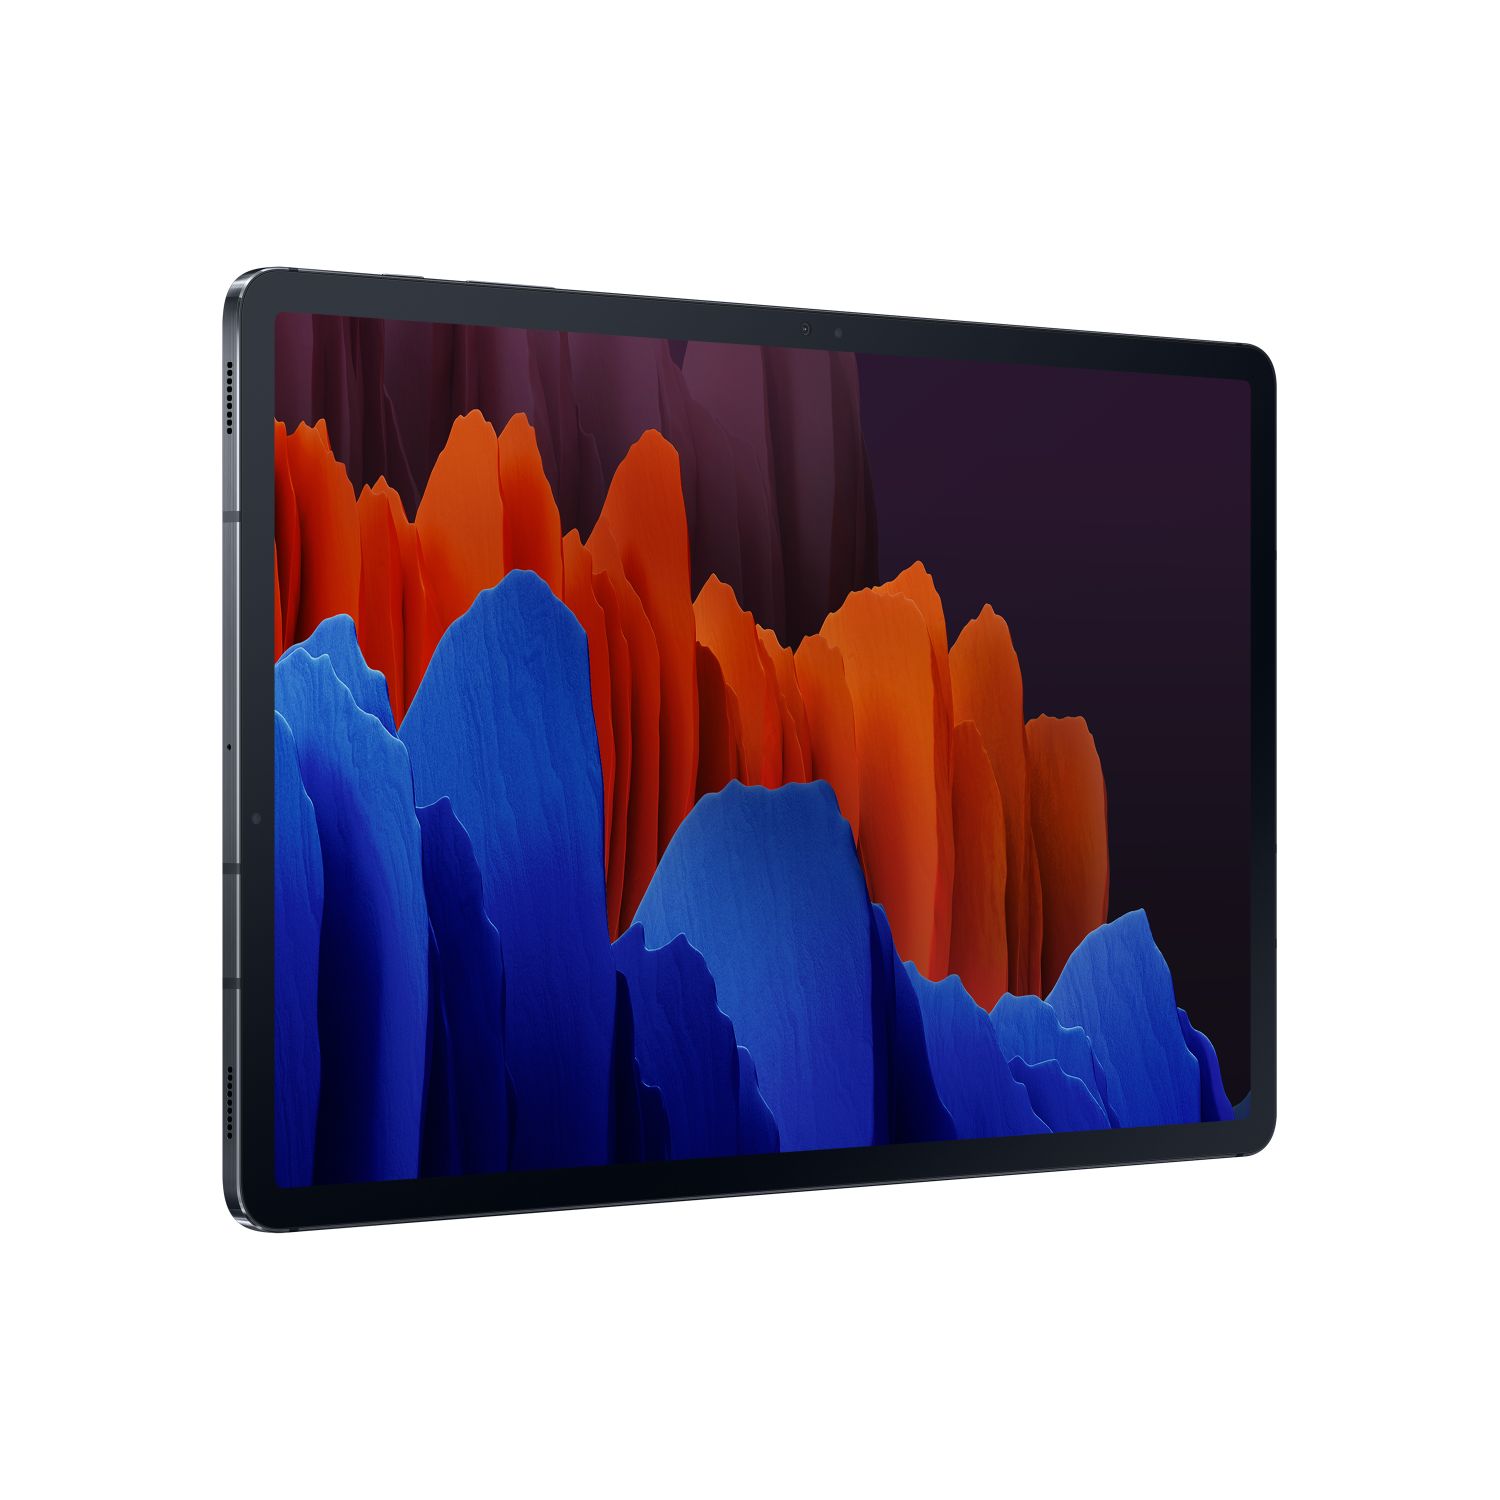 SM-T970NZKAEUB - Tablet SAMSUNG Tab S7 12.4